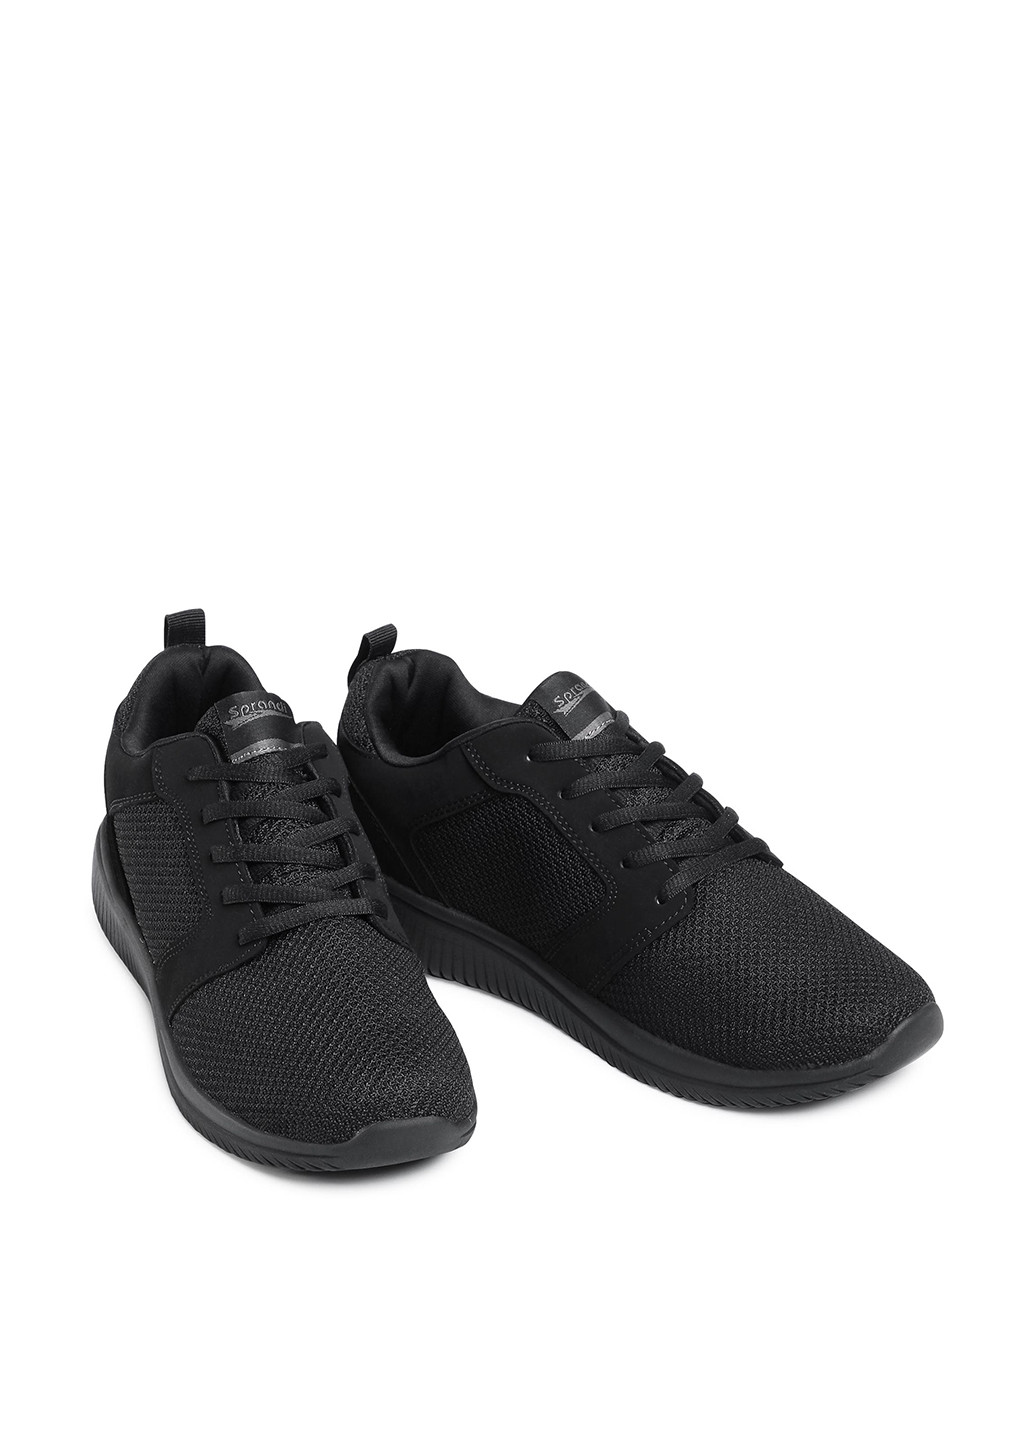 Черные демисезонные кросівки mp40-7655j Sprandi